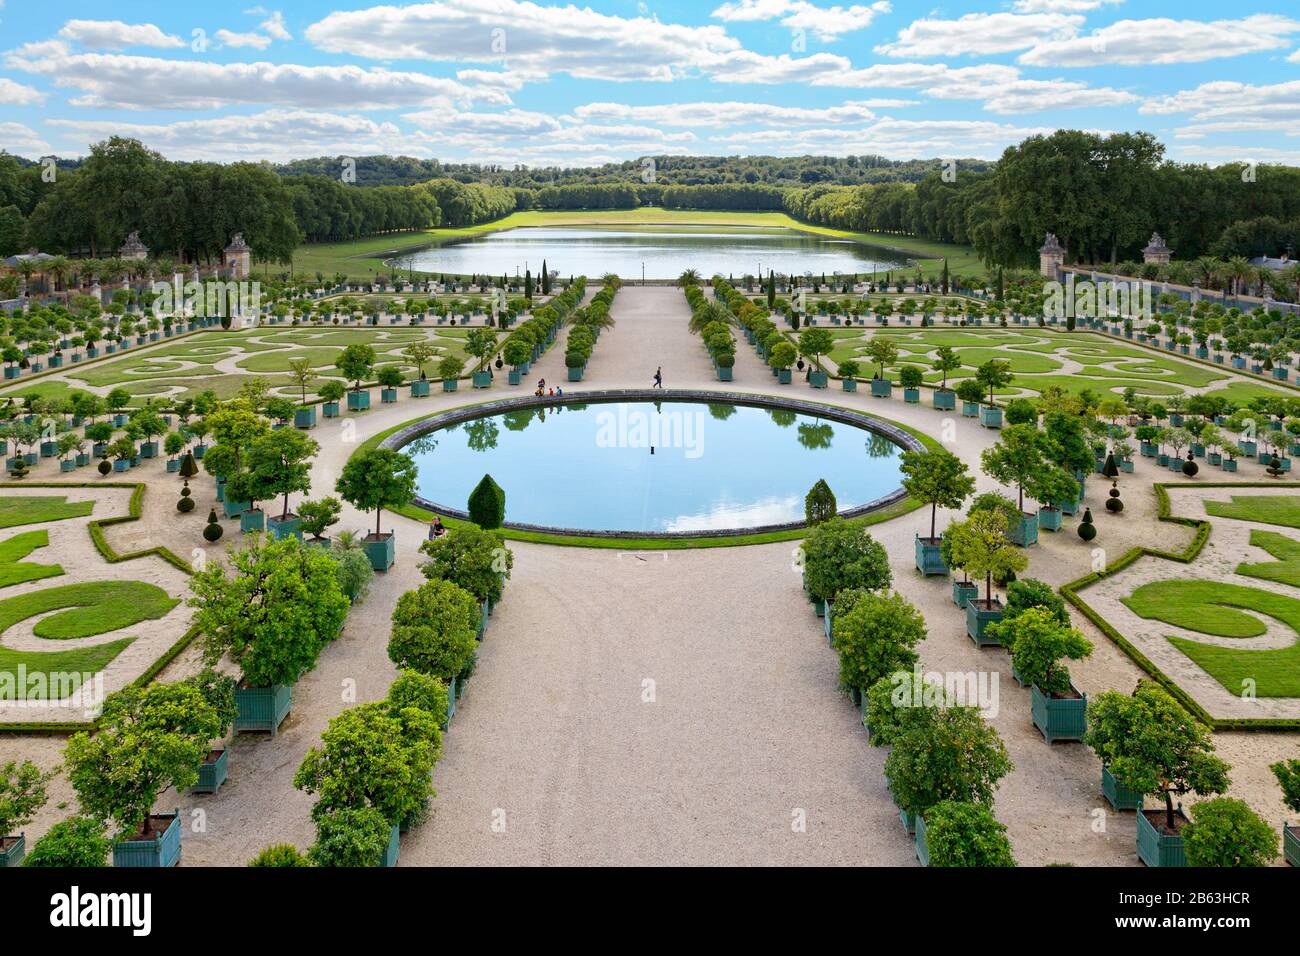 Versailles, Francia - 20 agosto 2017: Giardino di Orangerie nel parco di Versailles, con alberi di arancio in scatole. Foto Stock